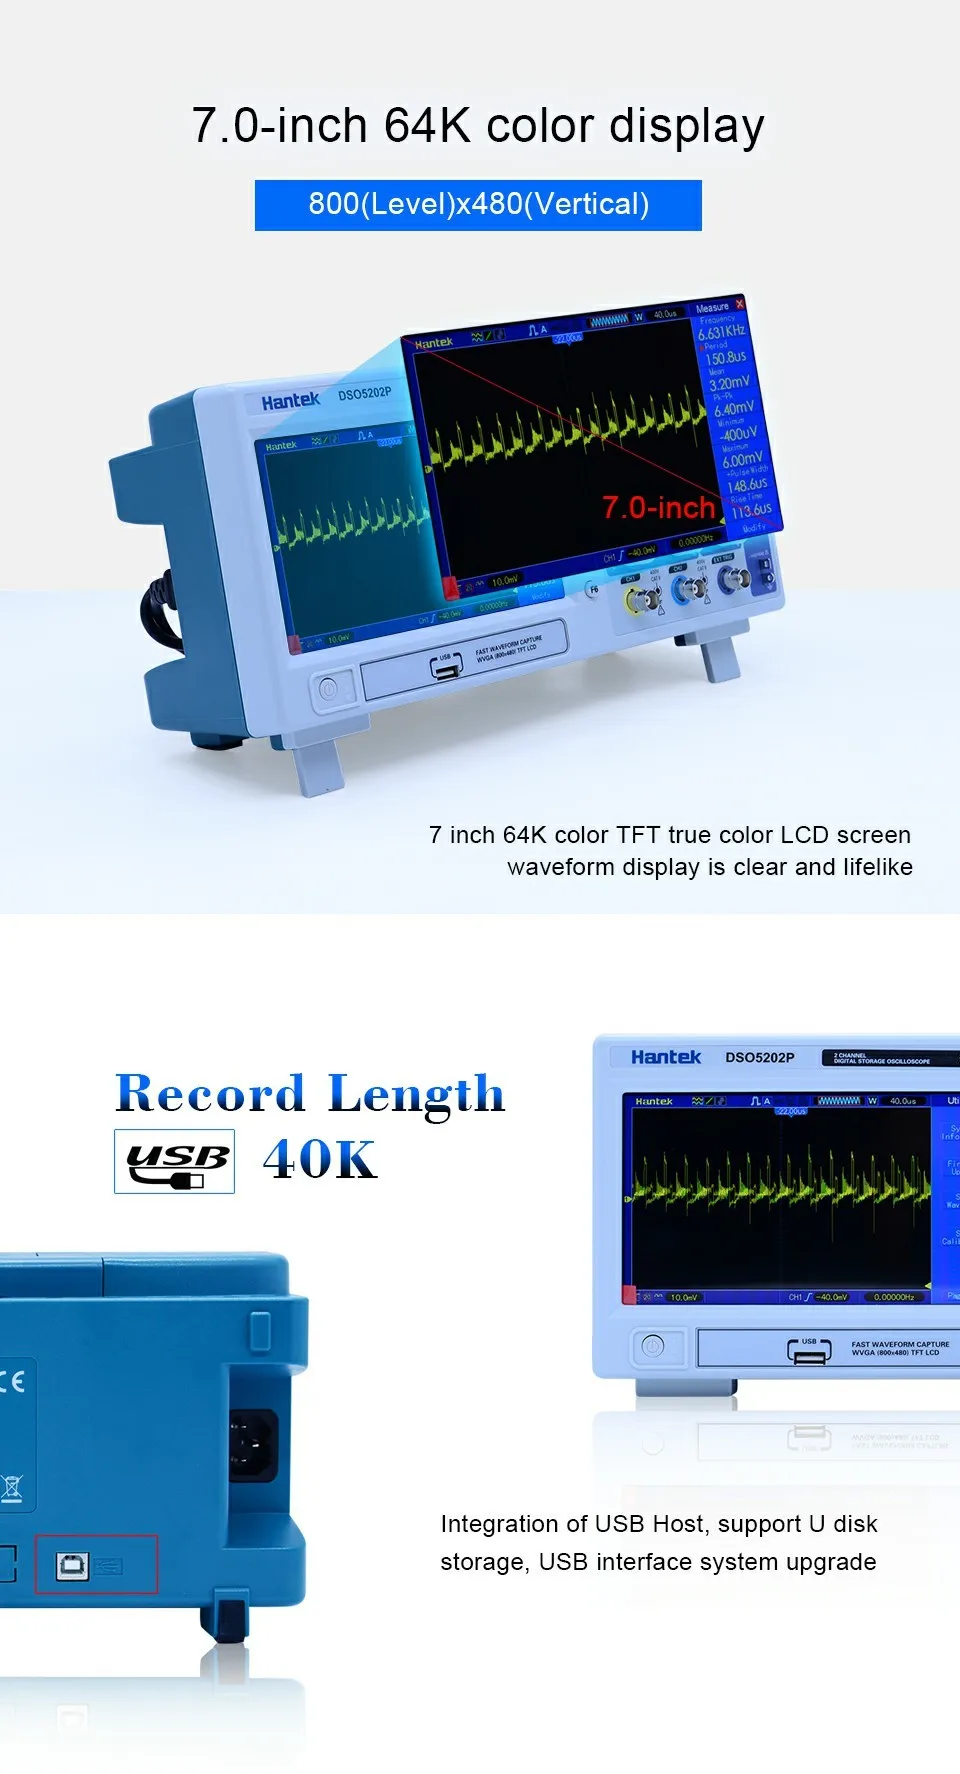 Hantek DSO5202P цифровой осциллограф 200 МГц 2 канала 1GSa/s " TFT ЖК-дисплей запись Длина 40 К USB AC110-220V рабочего стола osciloscope